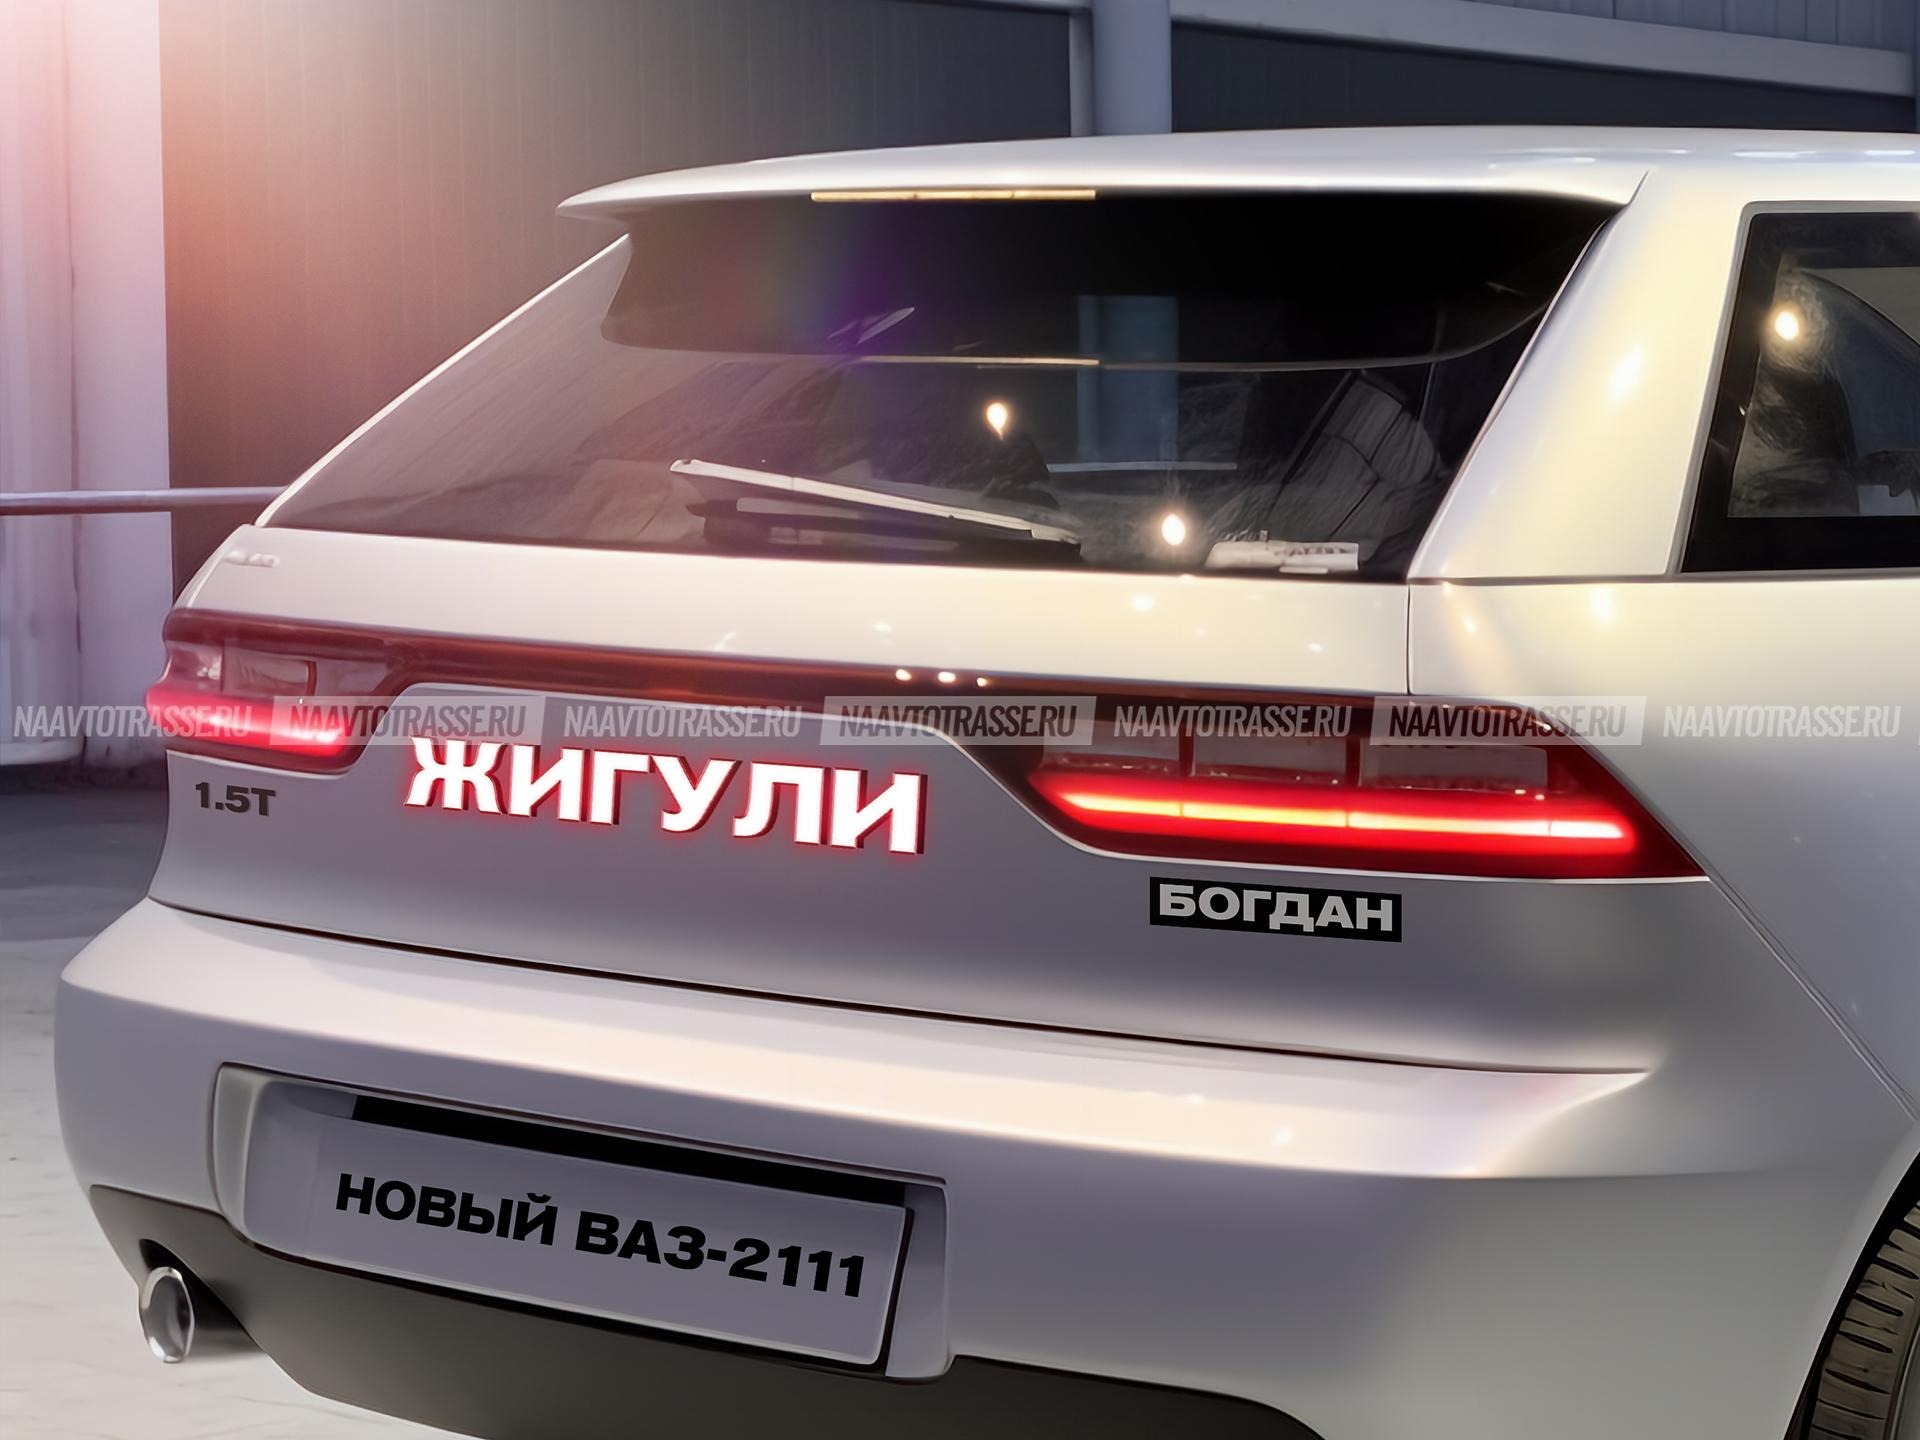 Оживленный ВАЗ-2111 «Богдан» 2024 года выпуска представлен на фото как очередная новинка от АвтоВАЗа.